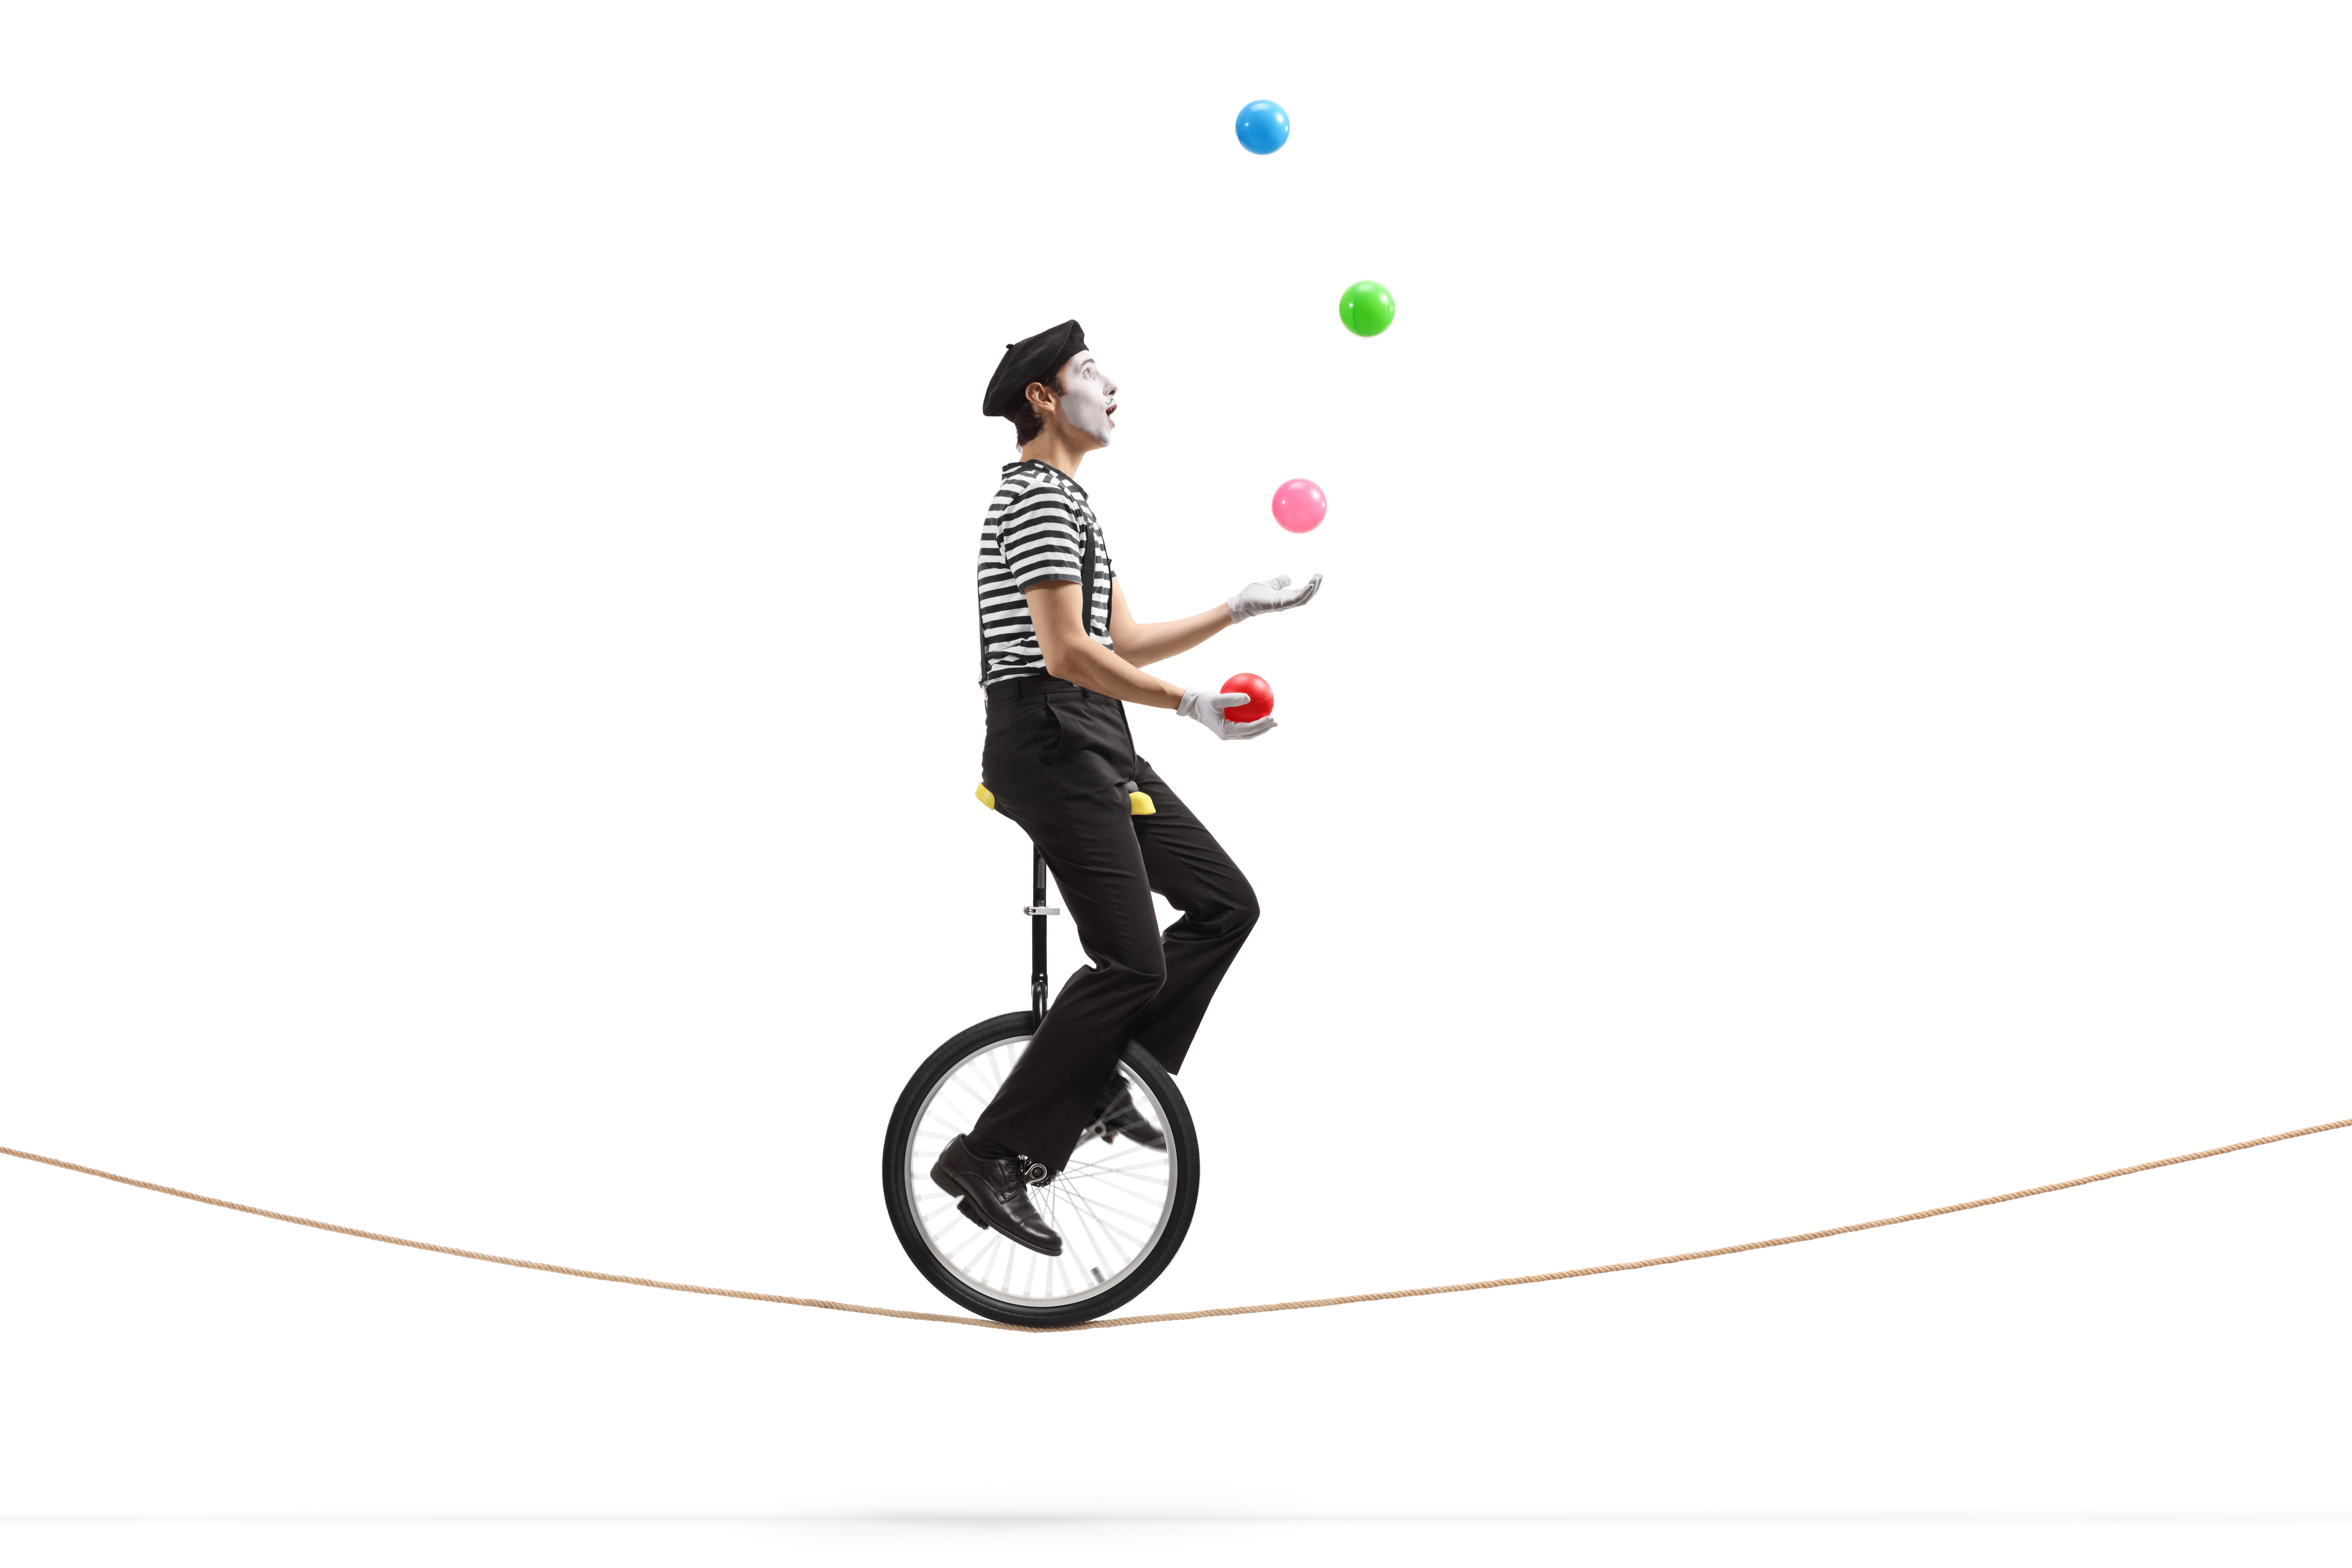 Juggler on unicycle